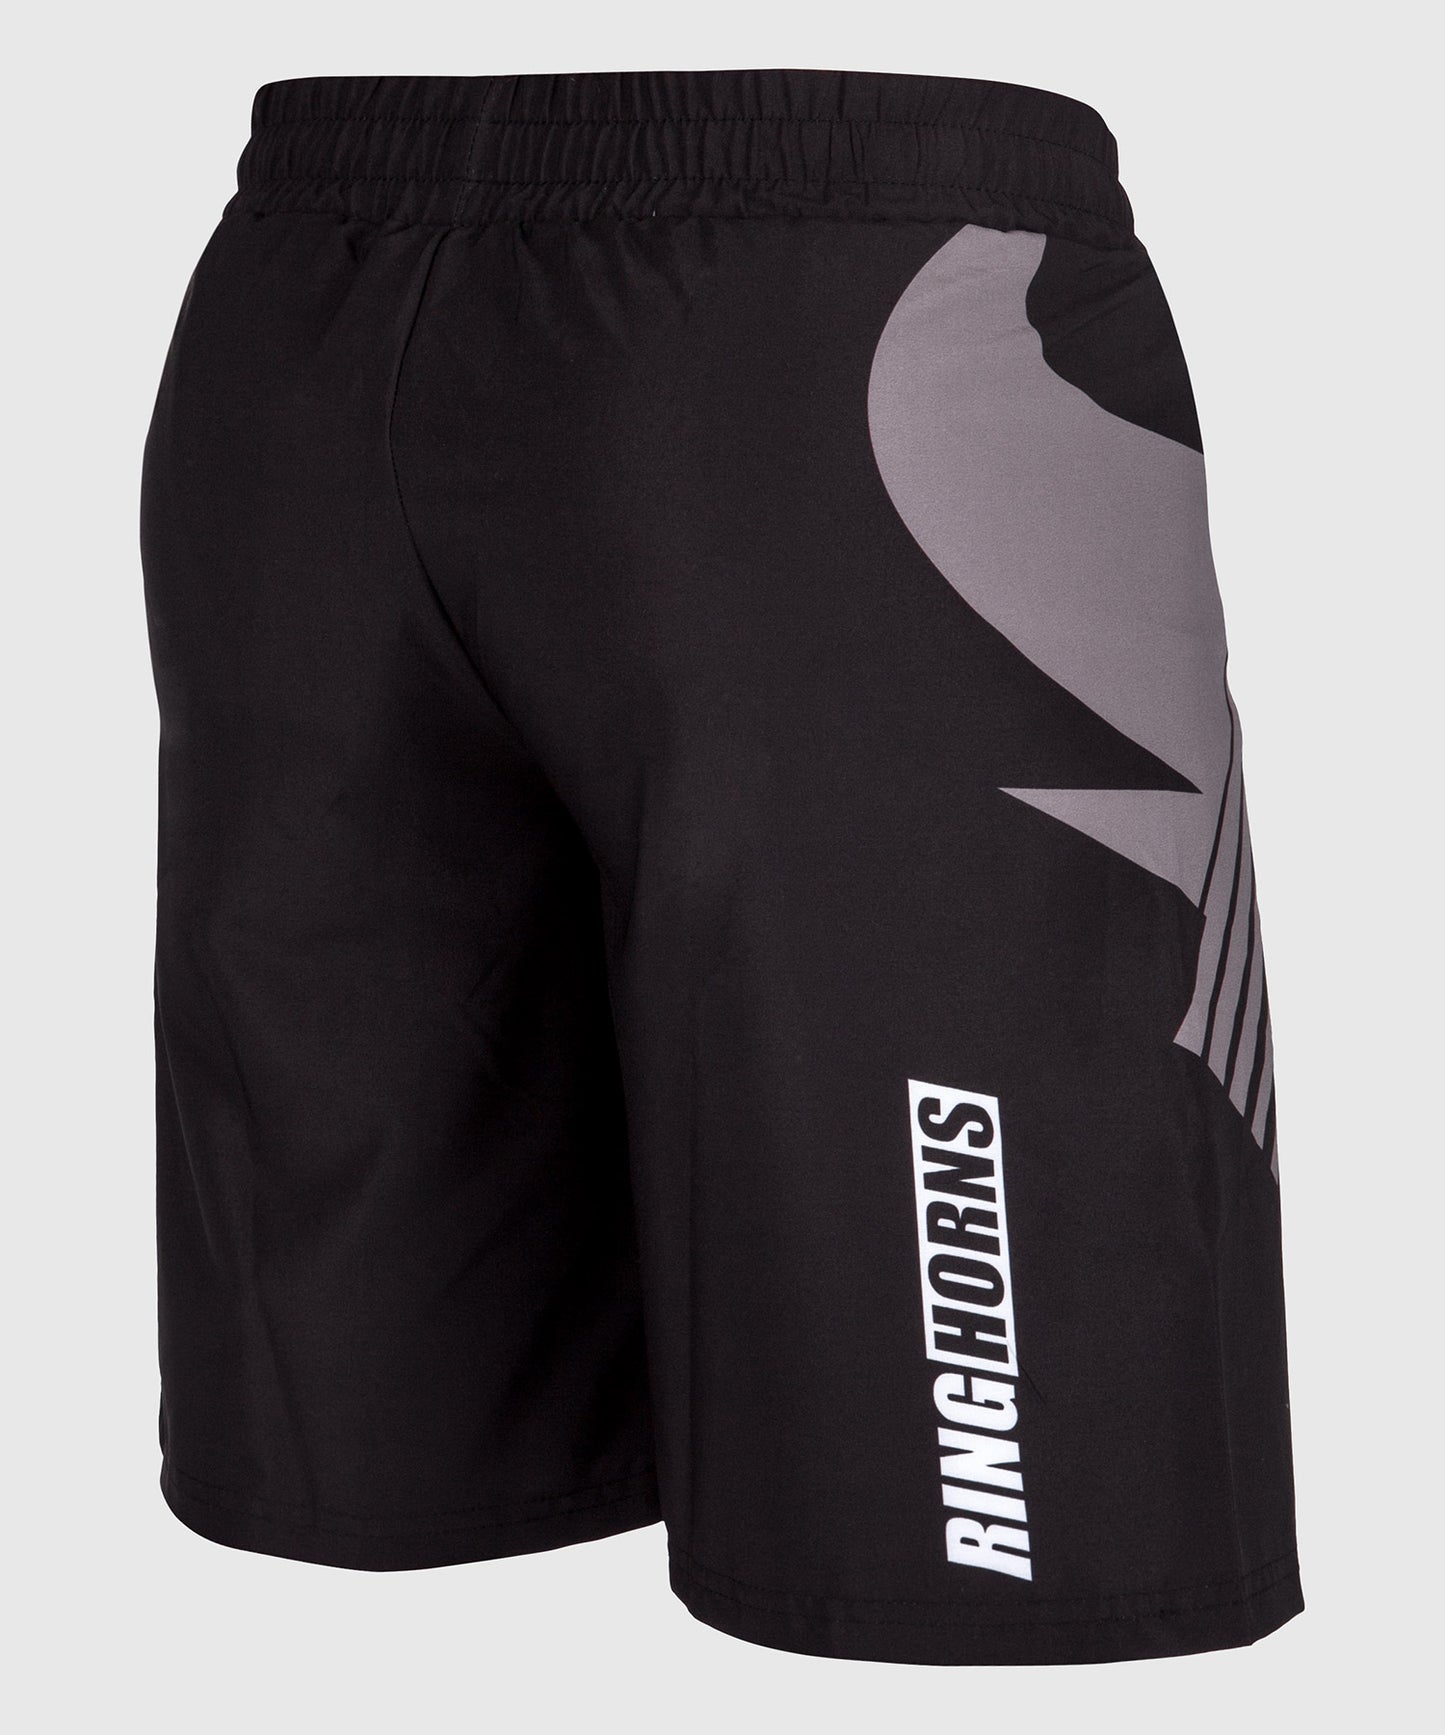 Pantalones cortos de entrenamiento Ringhorns  Charger - Negro